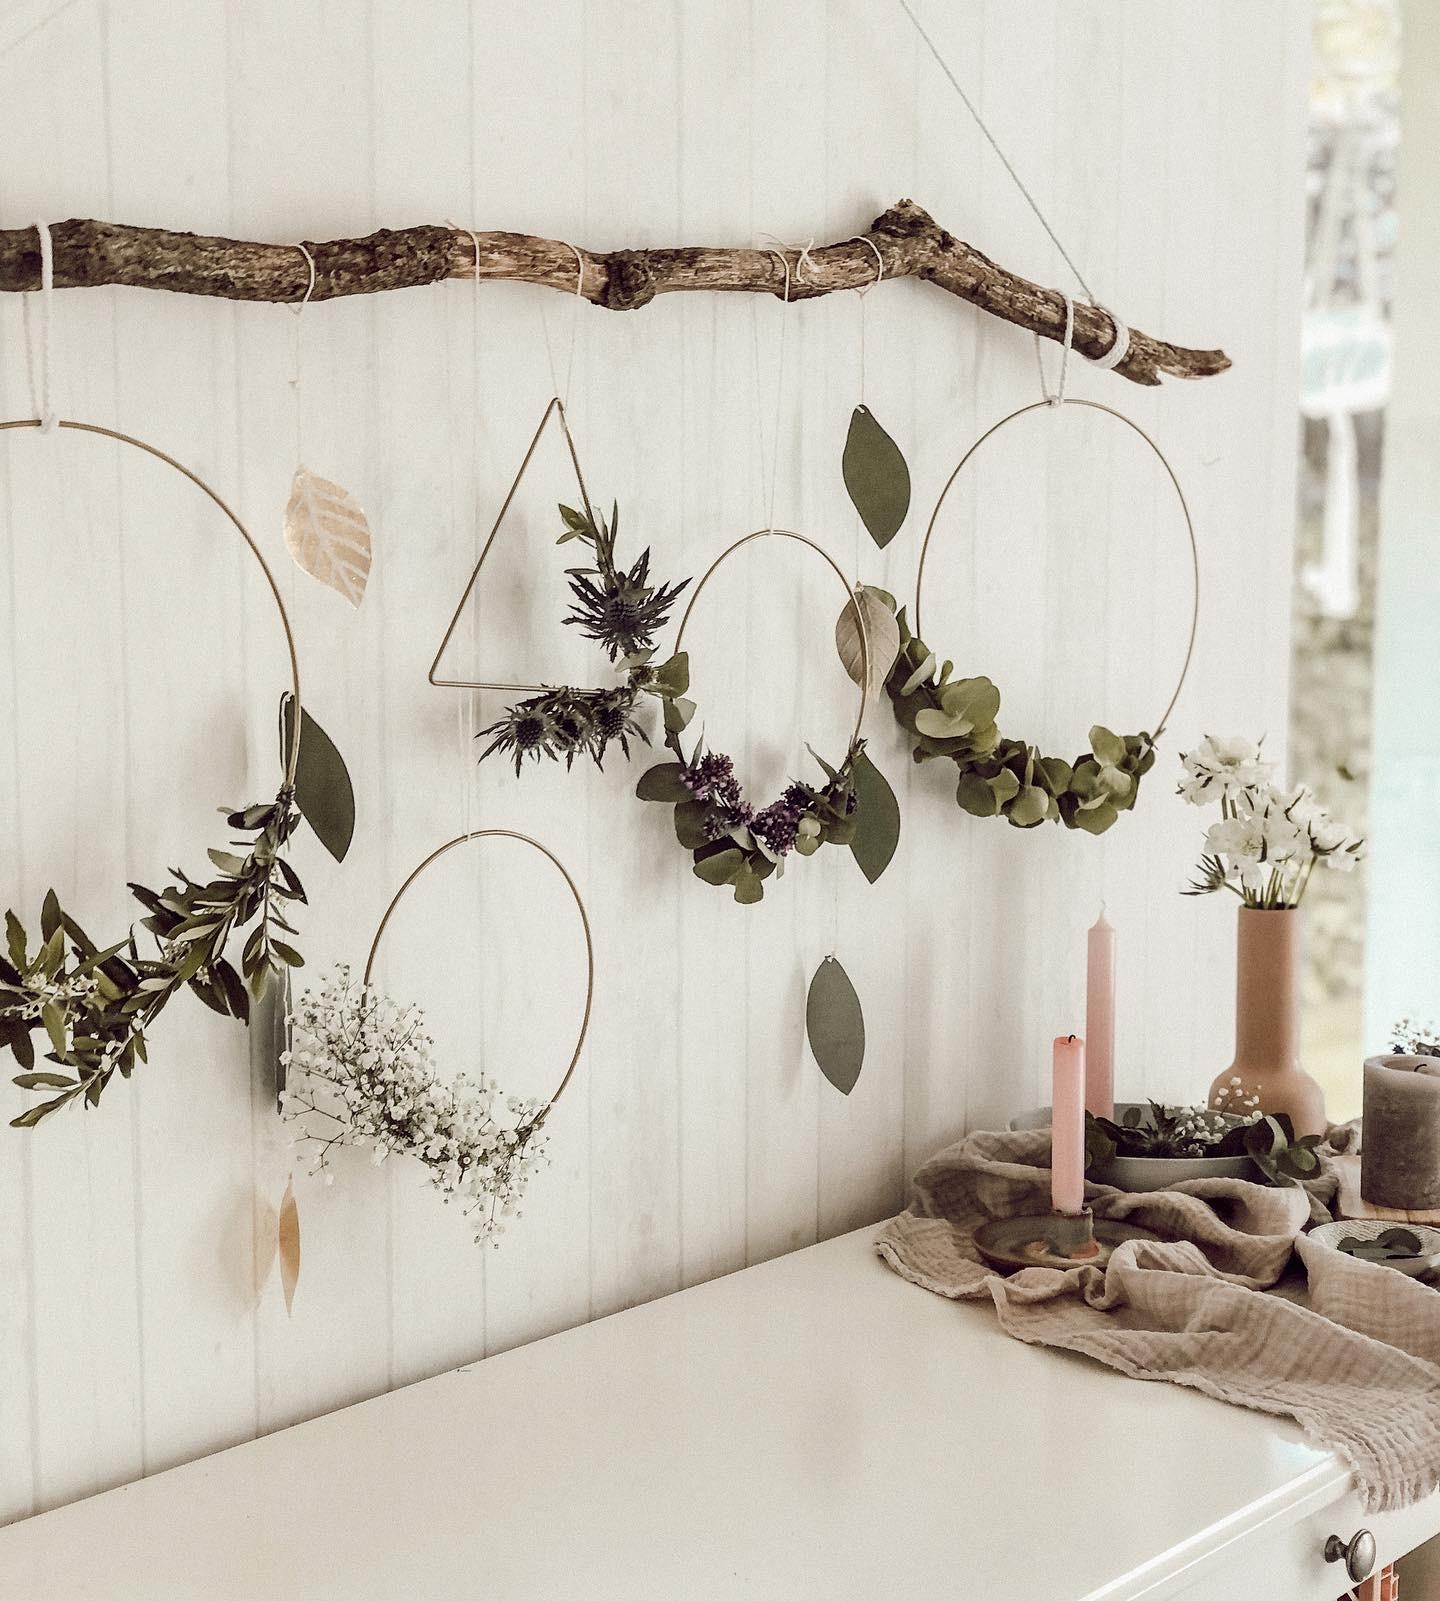 Wreathdecoration 🌿 
Ein einfaches #DIY mit dickem Ast, verschiedenem Grün u.unterschiedlichen Metallringen #Blumenkranz